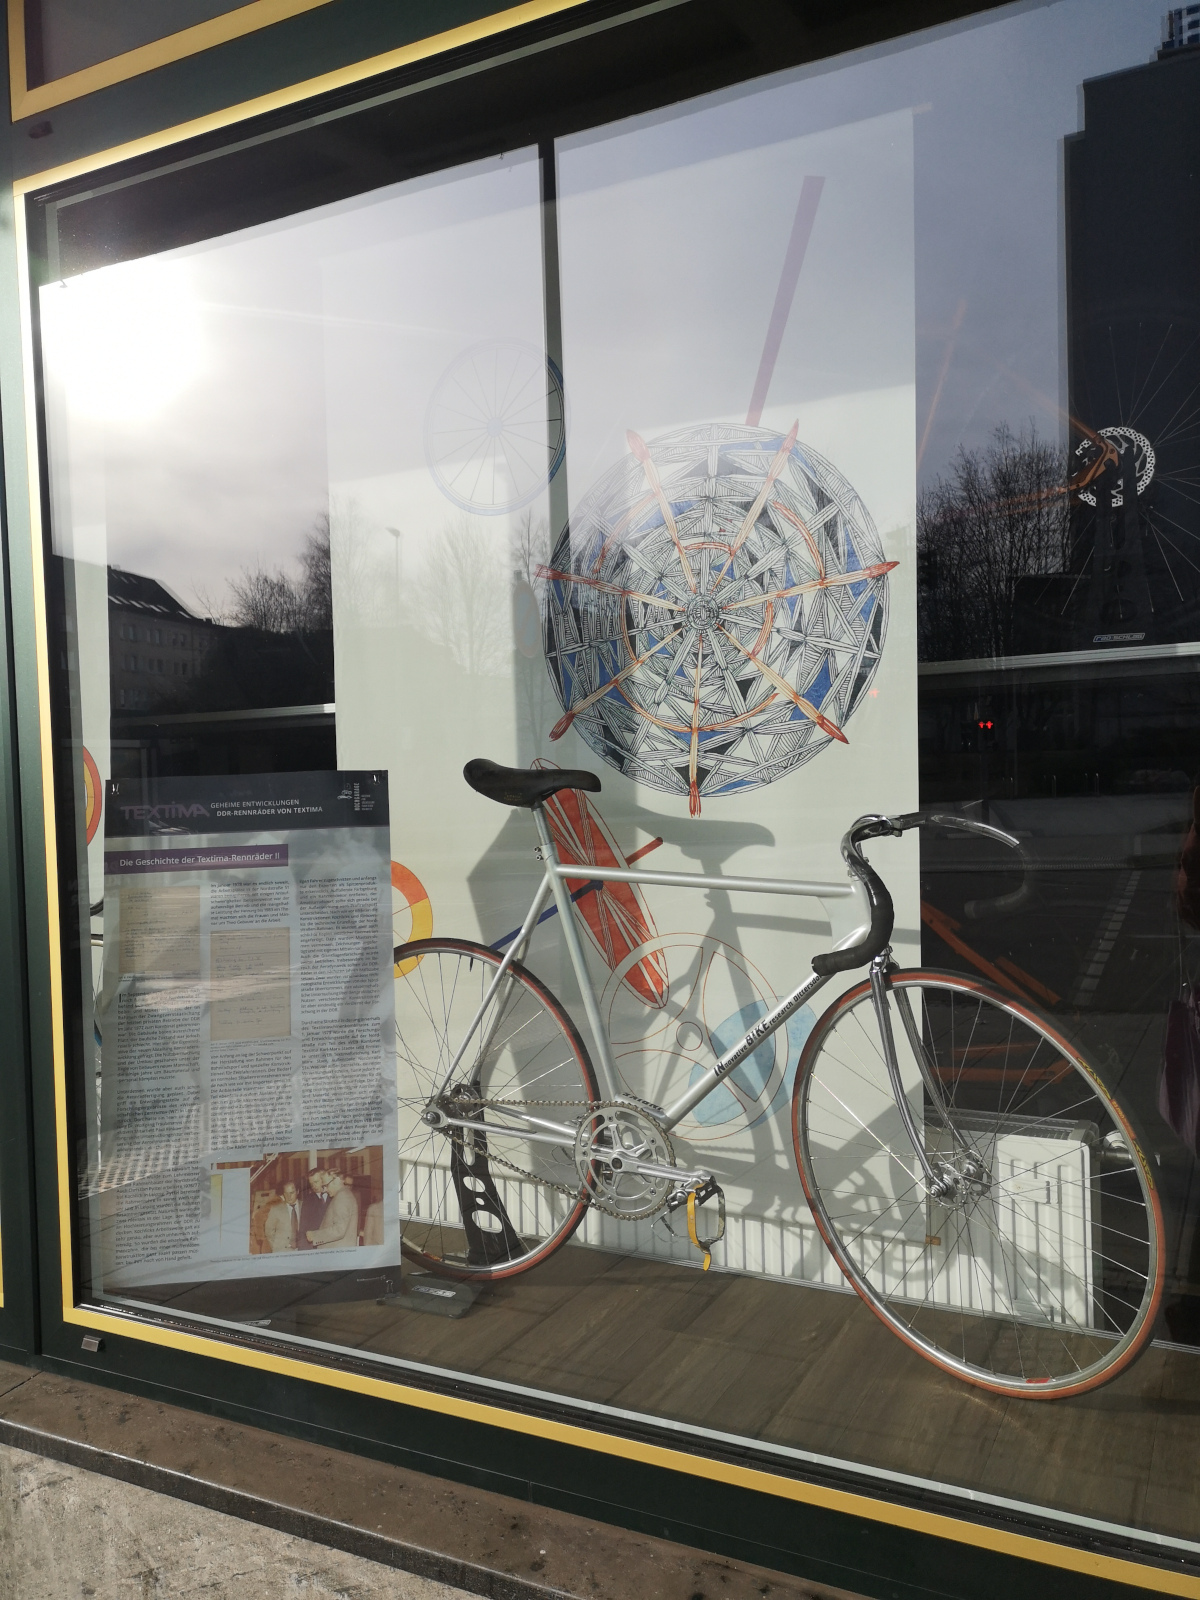 Schaufenster des Fahrradladens "Radschlag" in Chemnitz mit Textima-Ausstellung